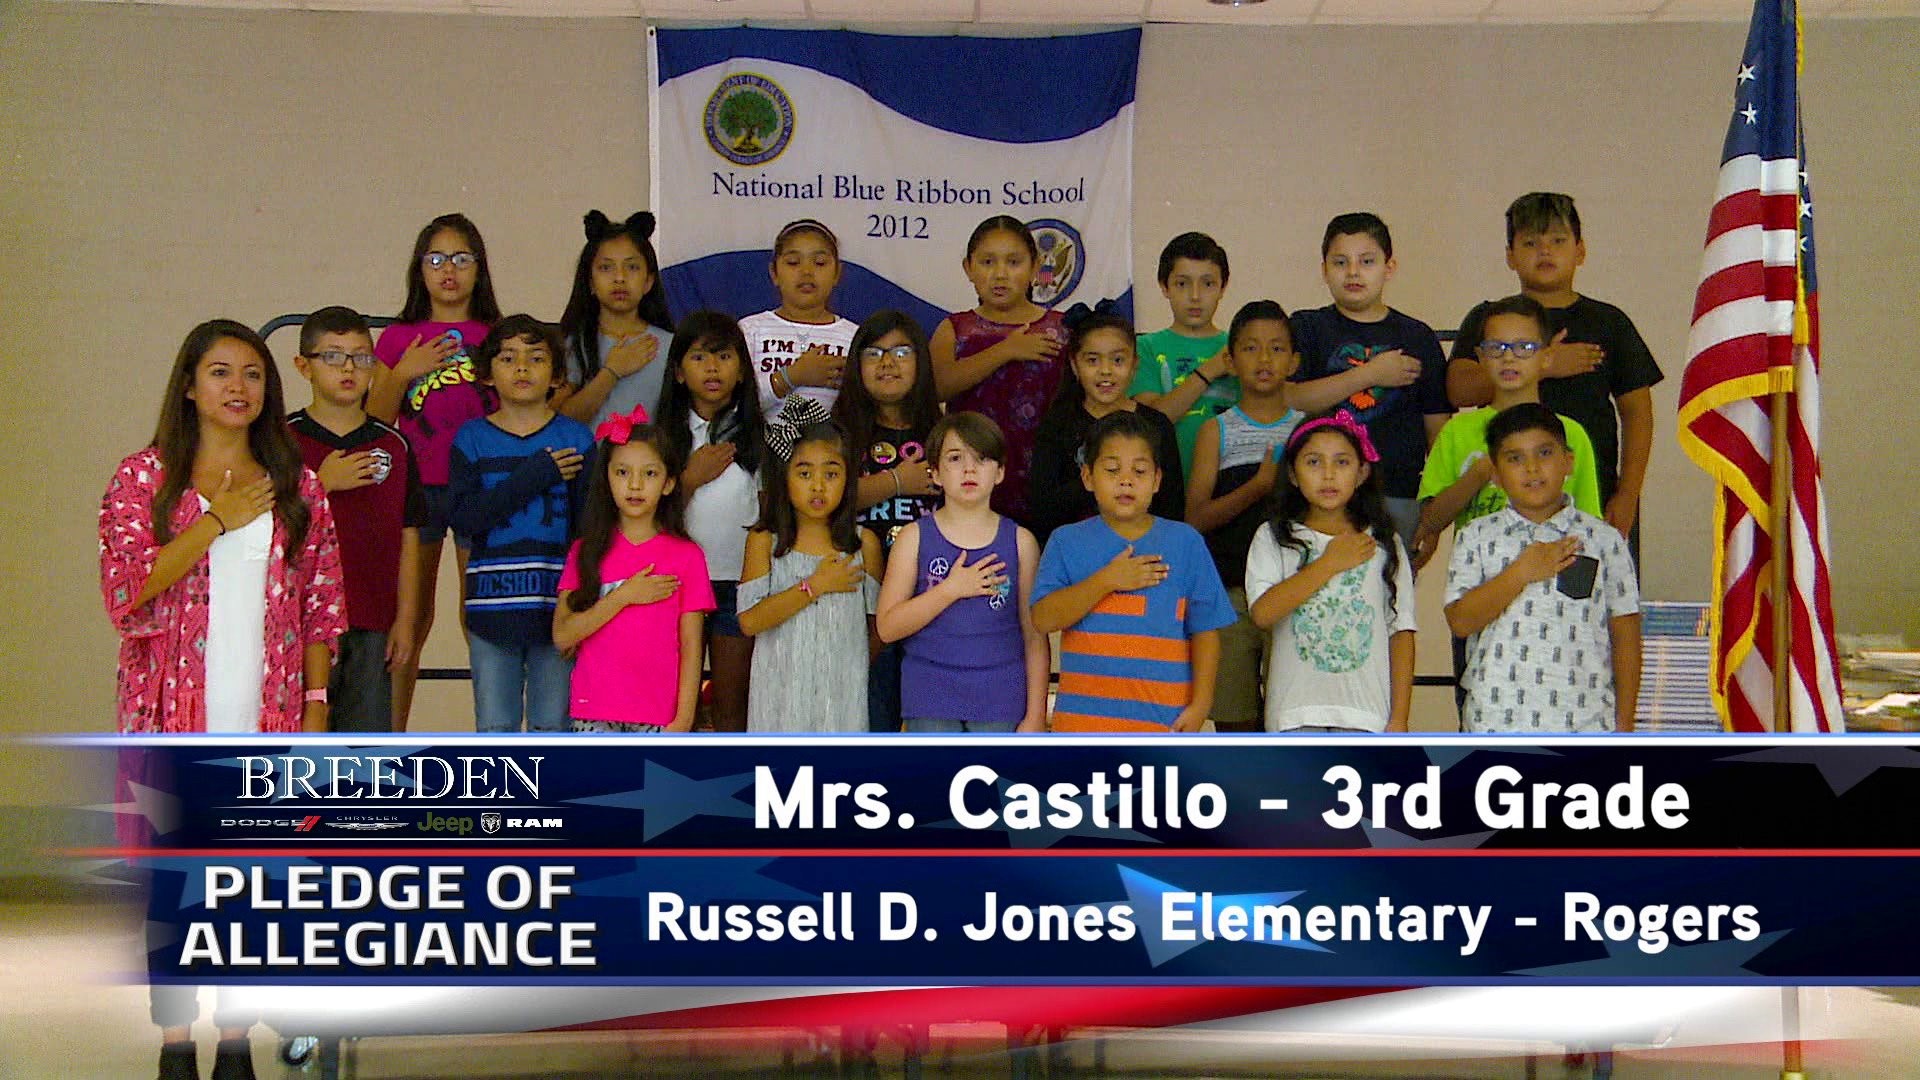 Mrs. Castillo  3rd Grade Russell D. Jones Elementary